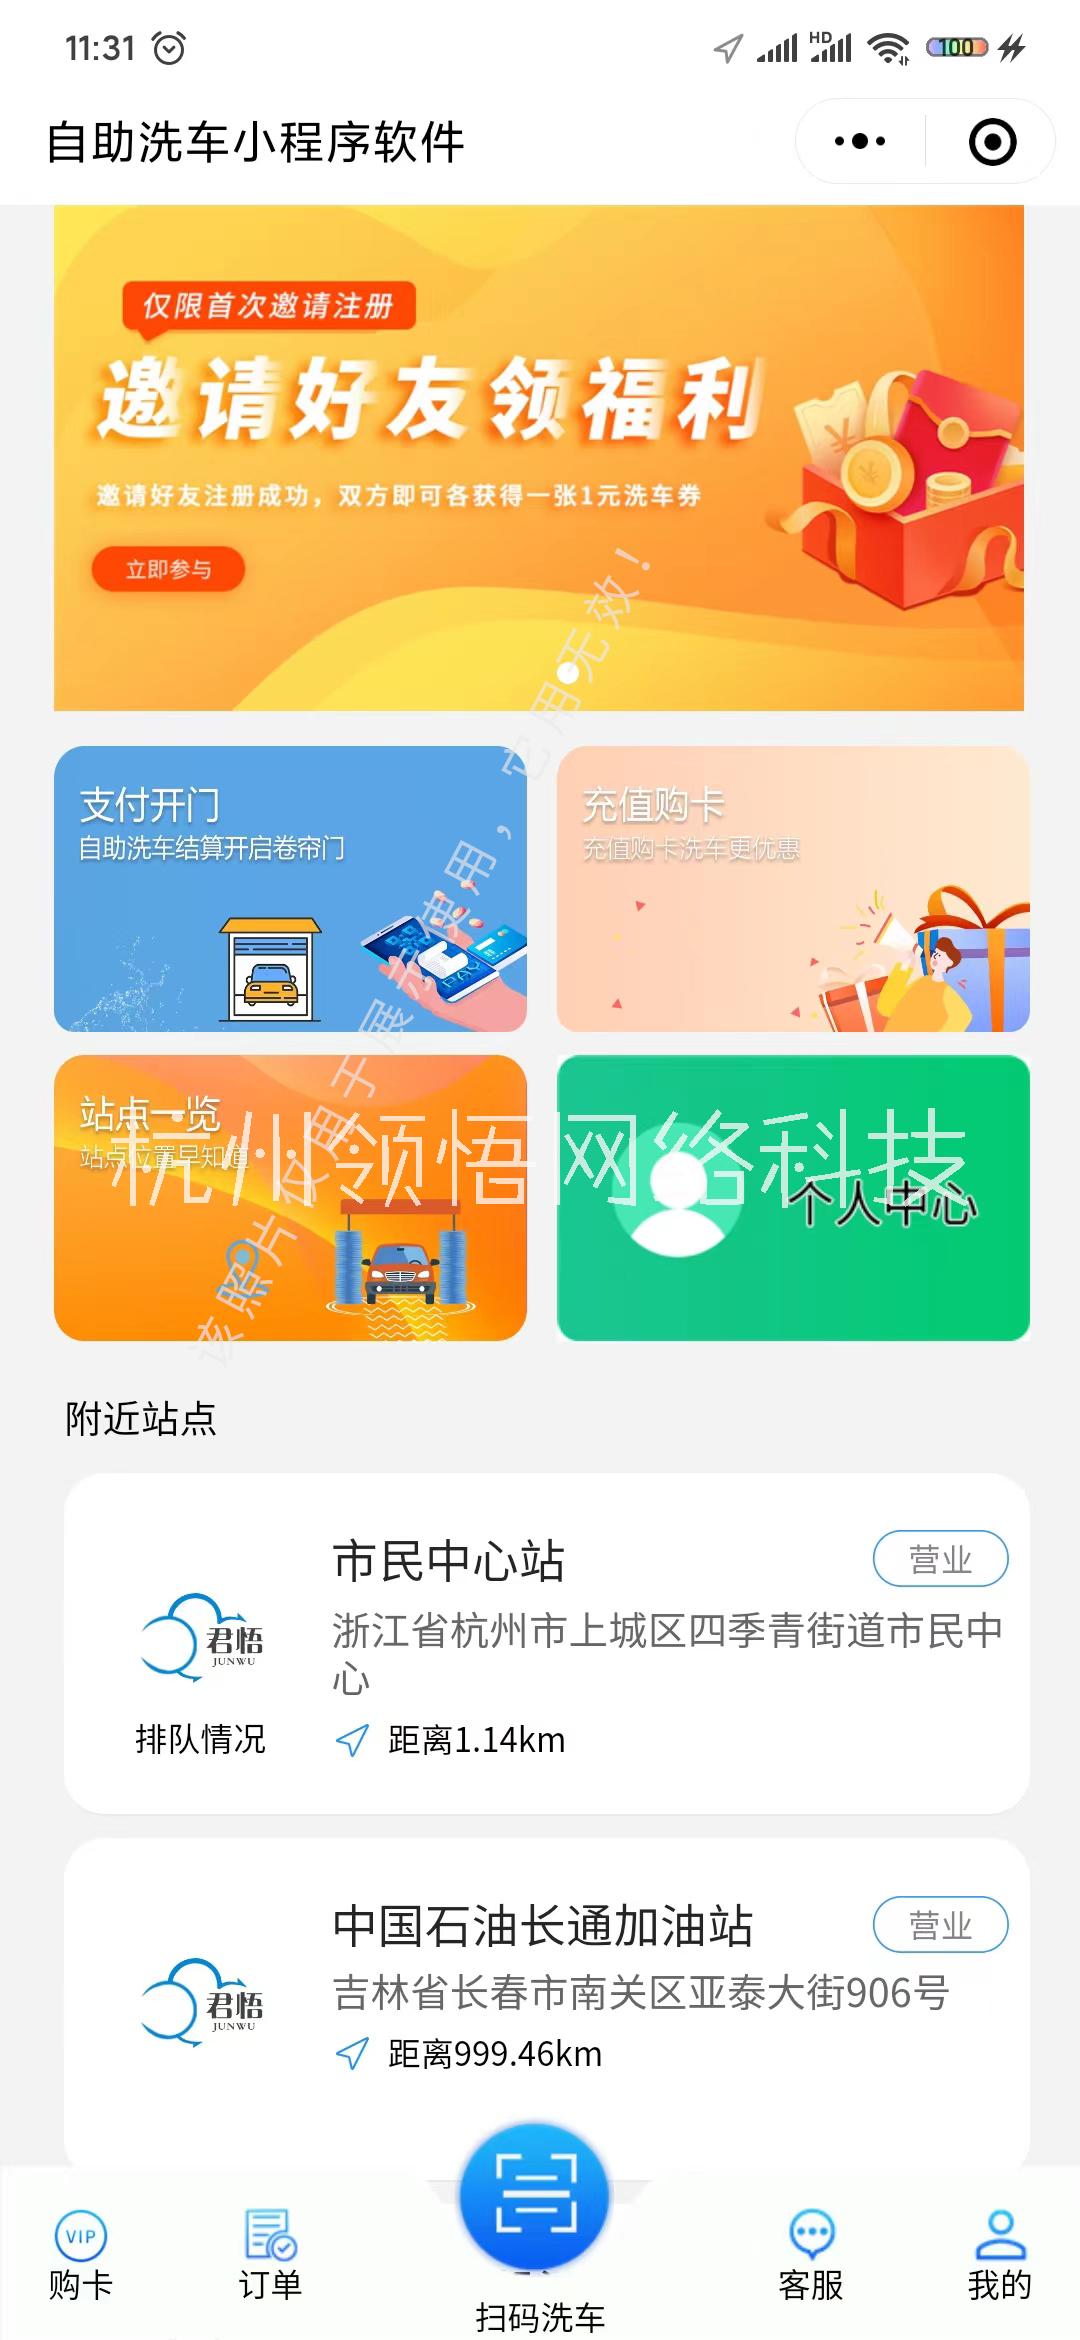 杭州君悟小程序自助洗车软件系统V3.0图片